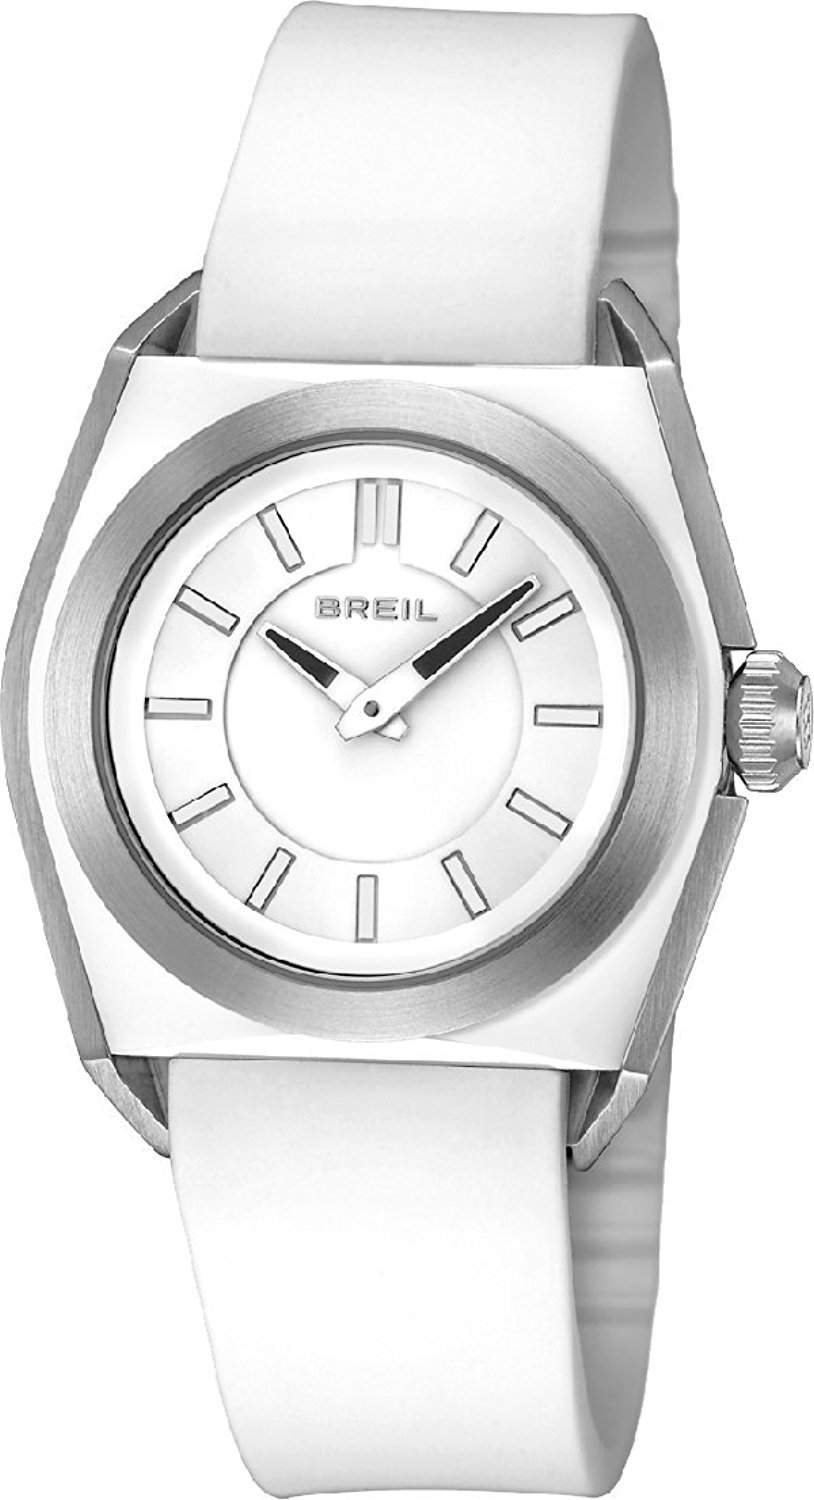 Breil Herren-Armbanduhr Analog Leder TW0816